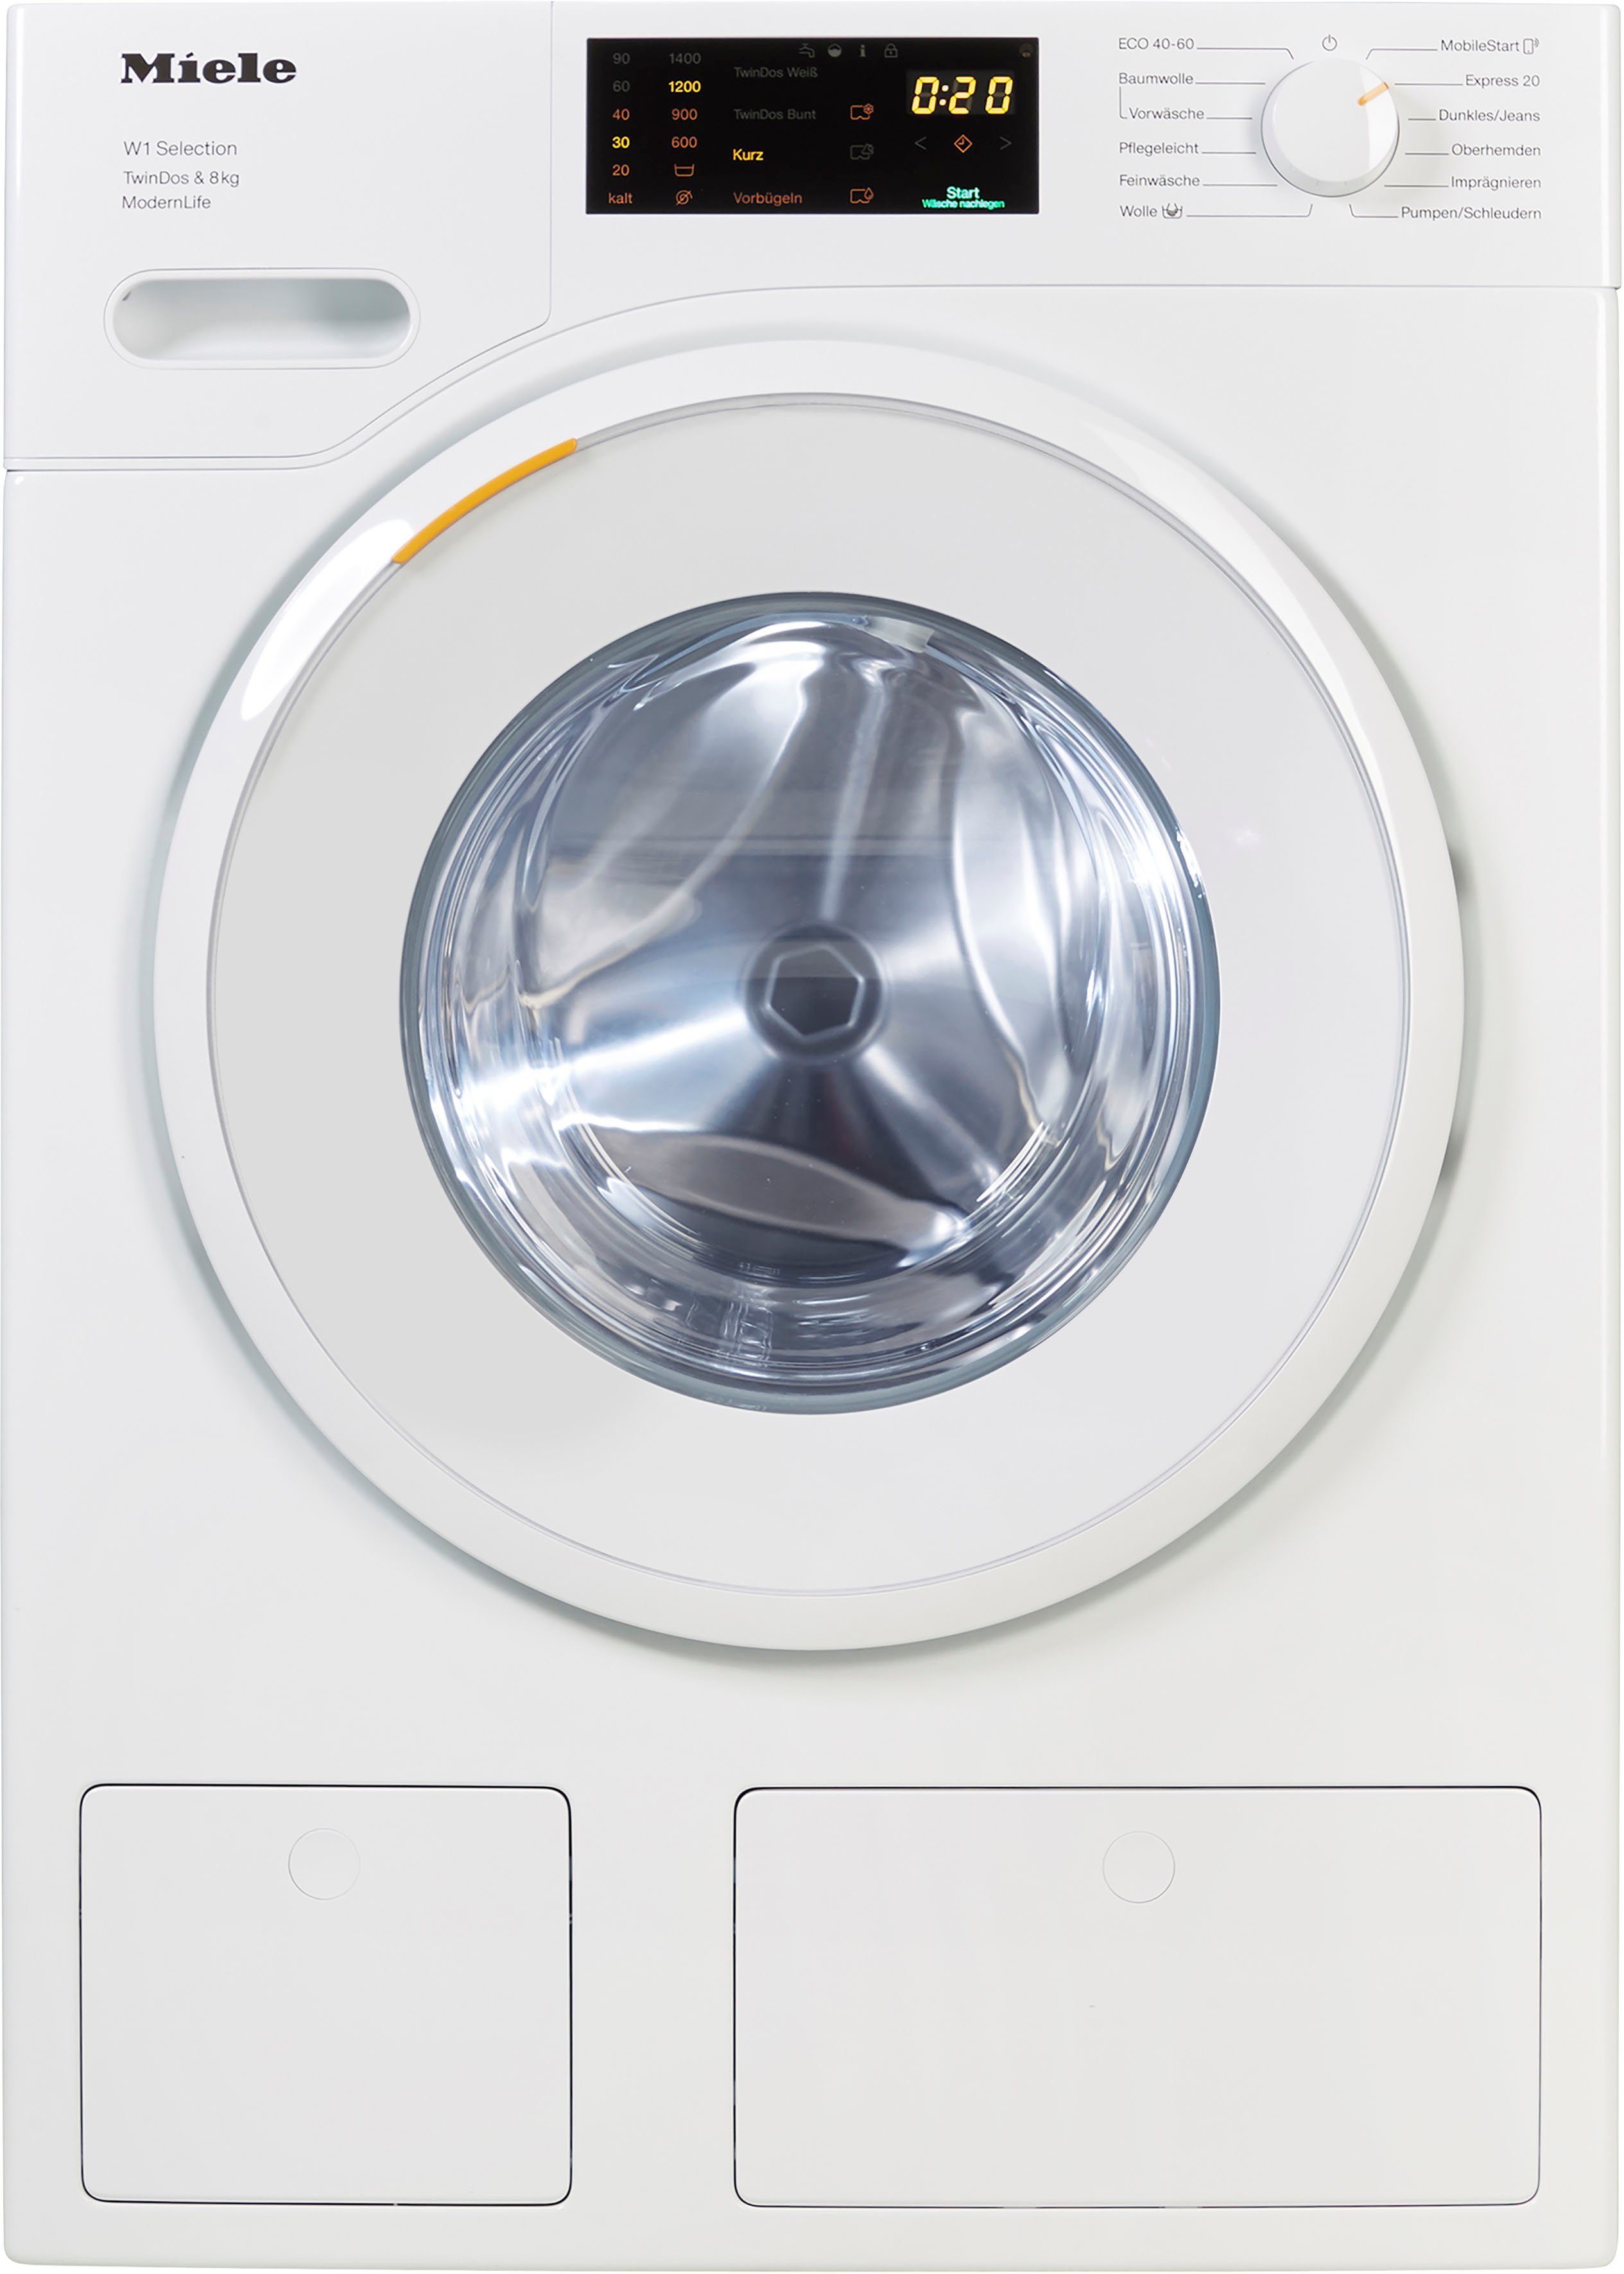 TwinDos TDos&8kg, U/min, WCS kg, automatischen WSD663 Waschmitteldosierung ModernLife zur Miele 8 Waschmaschine 1400